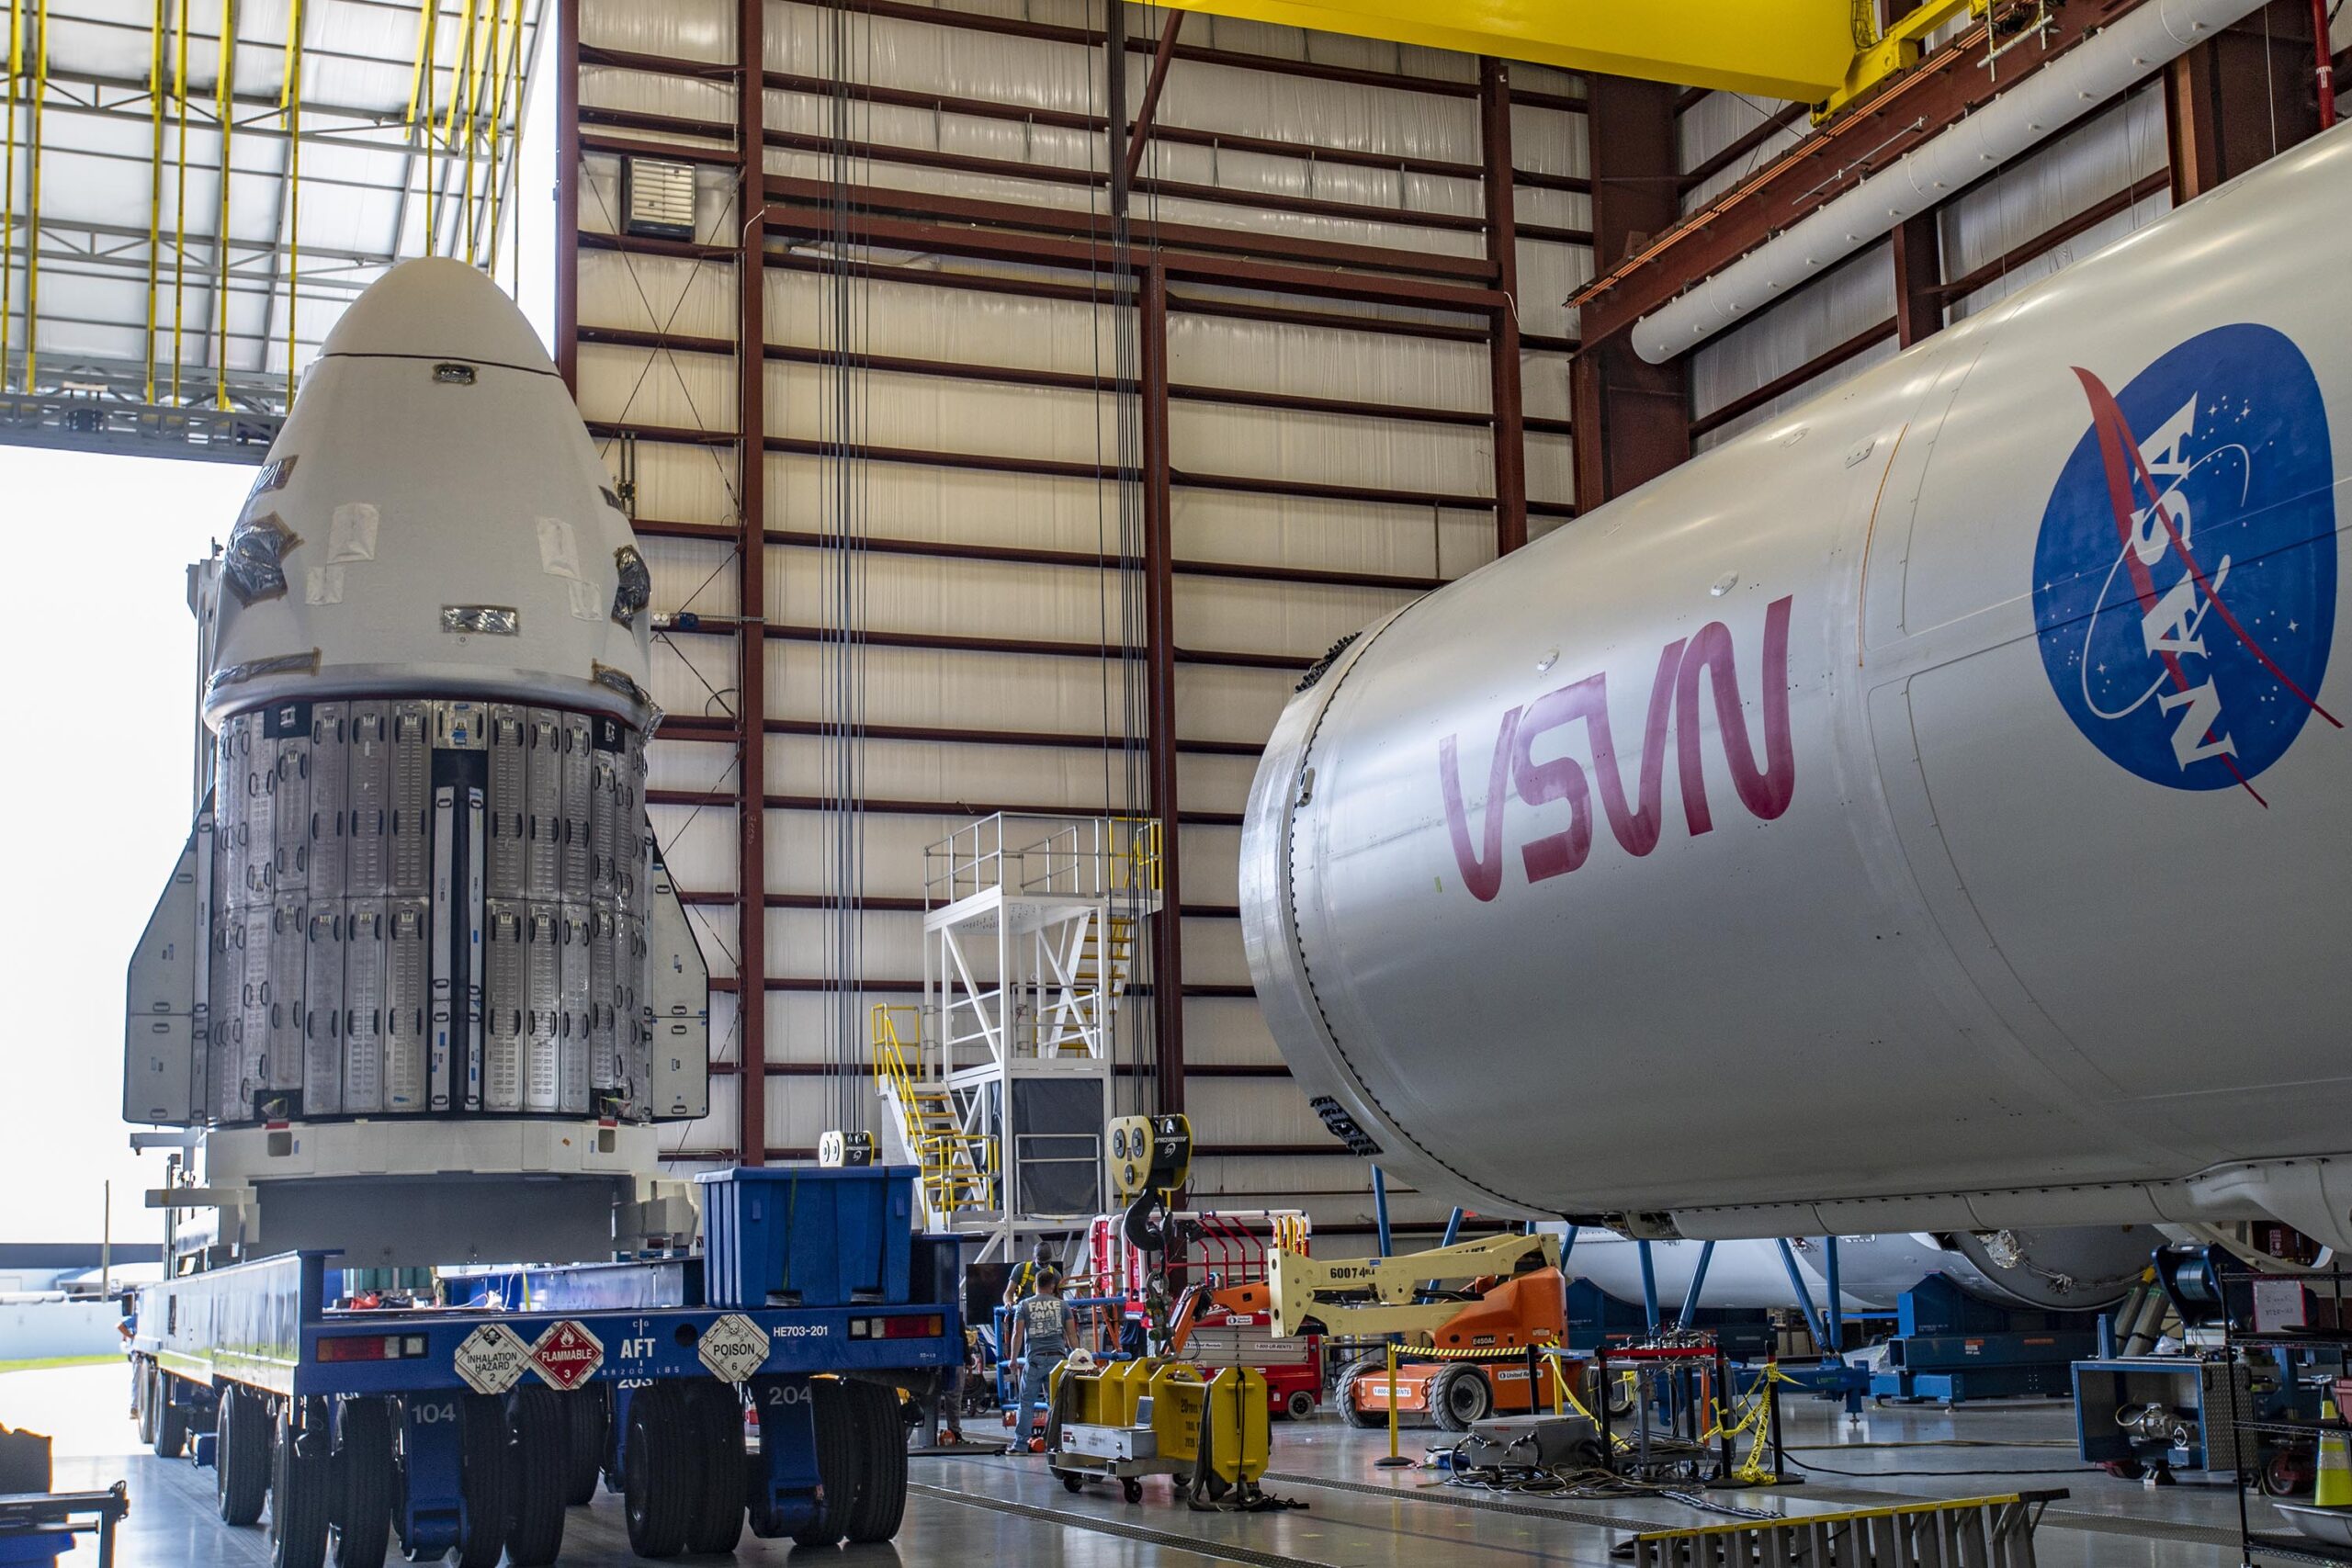 2022年9月23日，美国国家航空航天局 SpaceX Crew-5 任务的宇航员飞船抵达佛罗里达州肯尼迪航天中心发射场 39A 的机库。